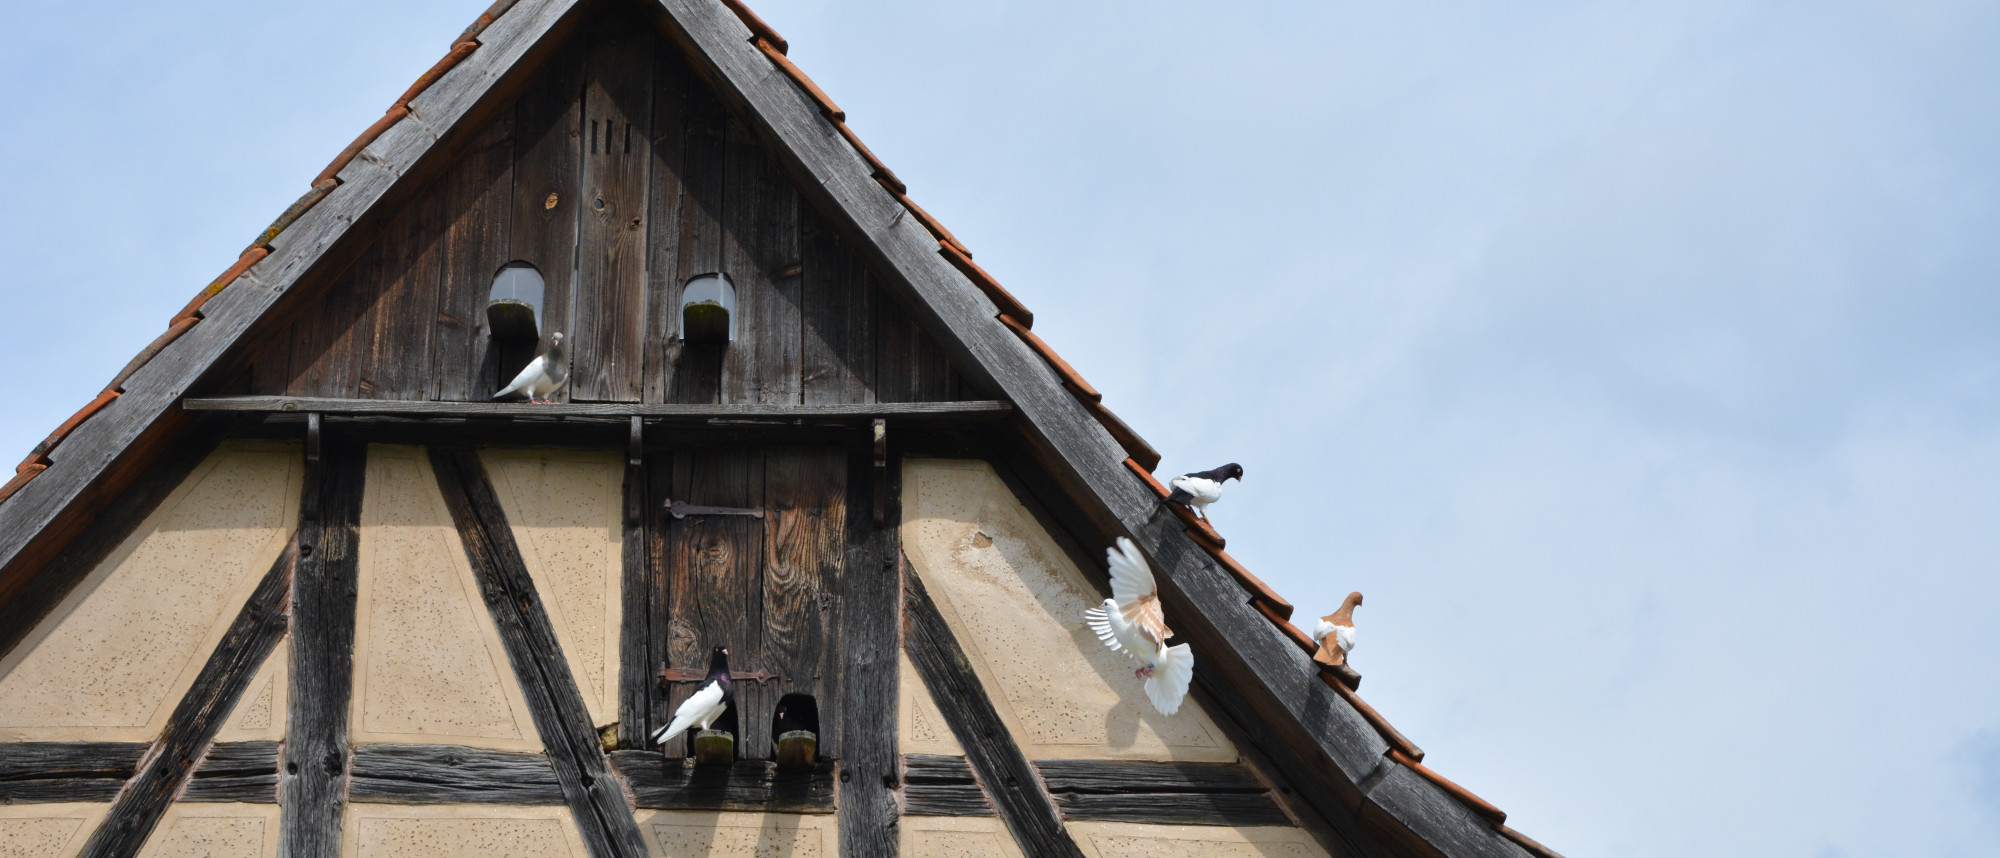 Tauben am Dach eines historischen Fachwerkhauses